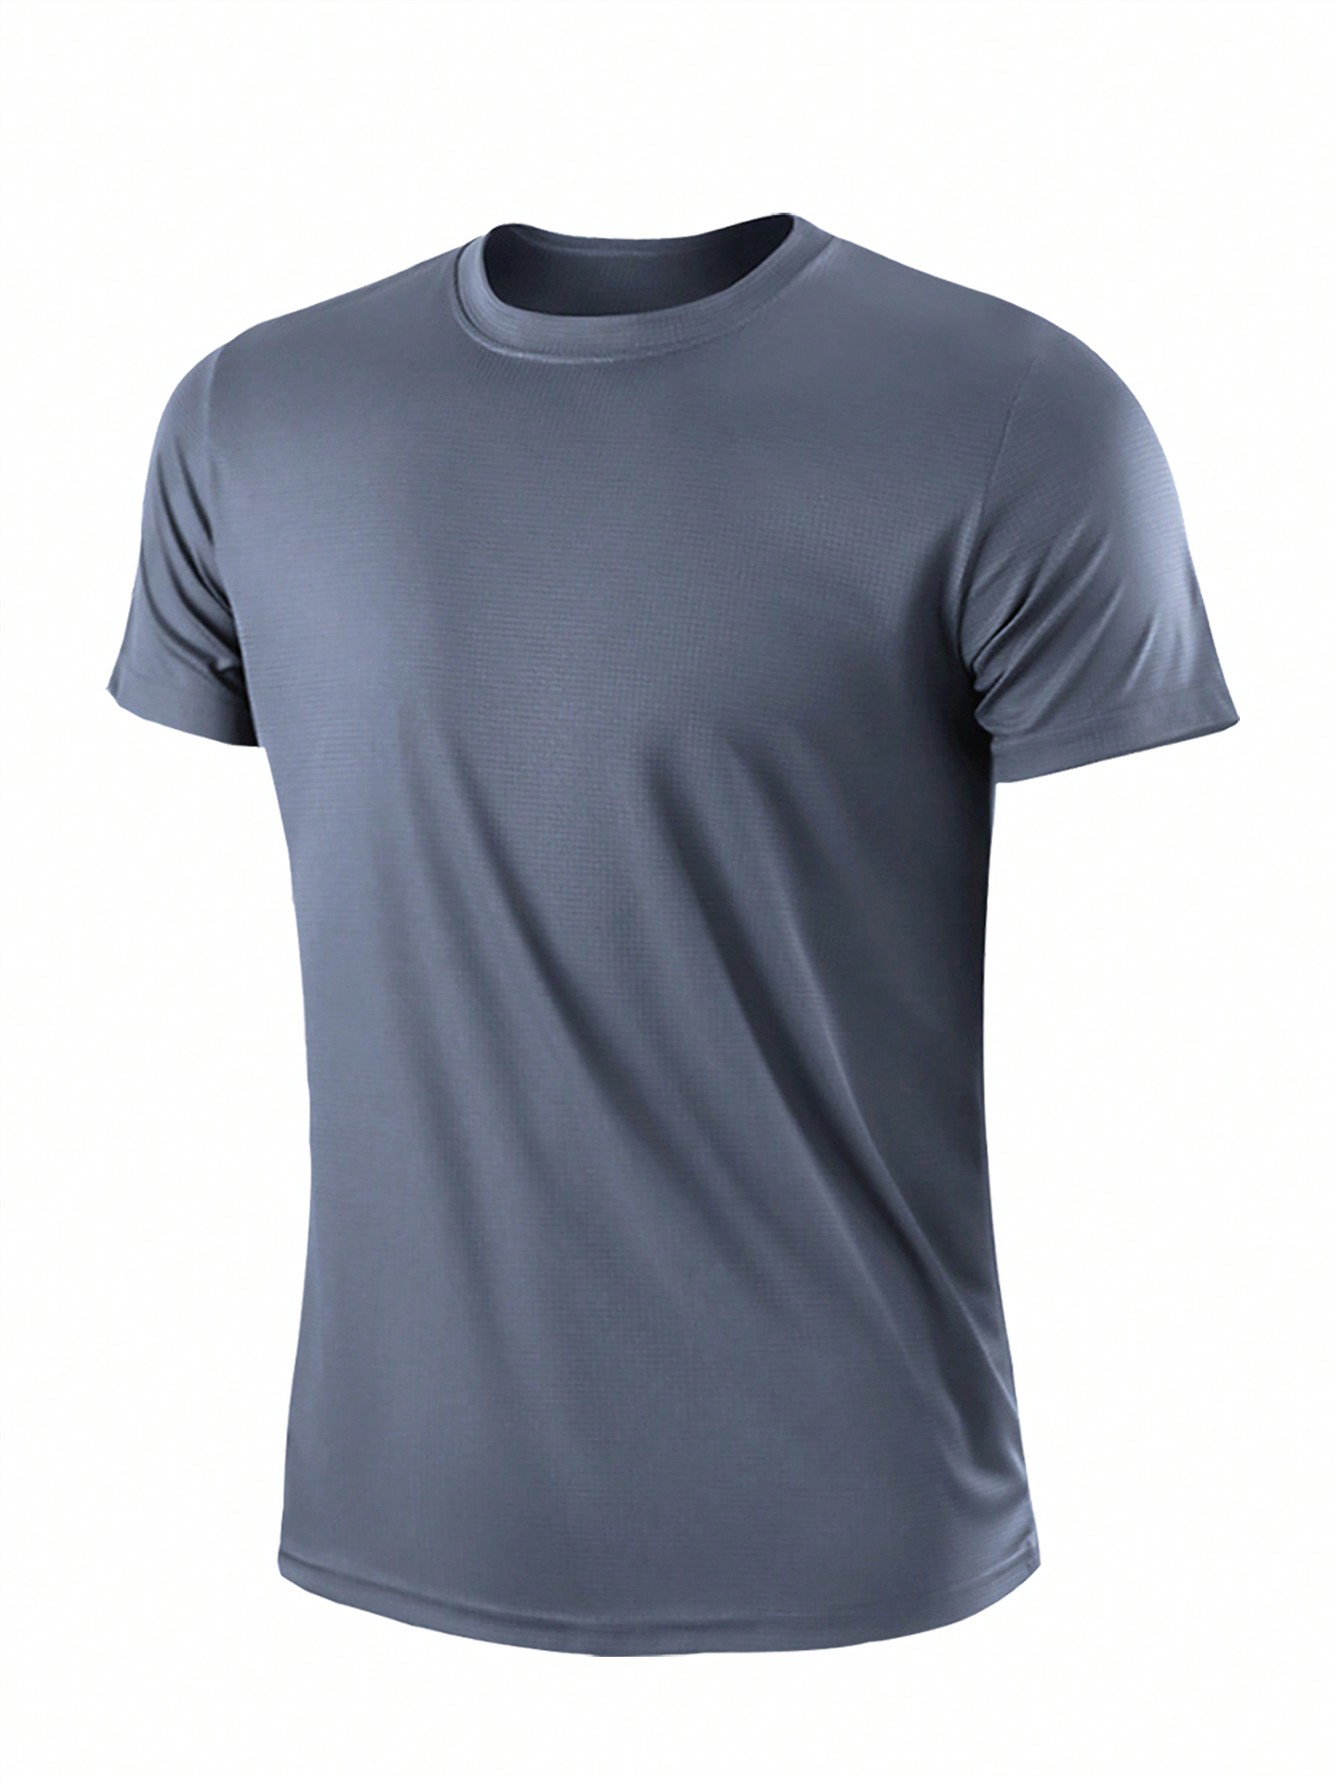 2 шт. комплект свободных футболок с короткими рукавами для тренировок и бега для мужчин, серый